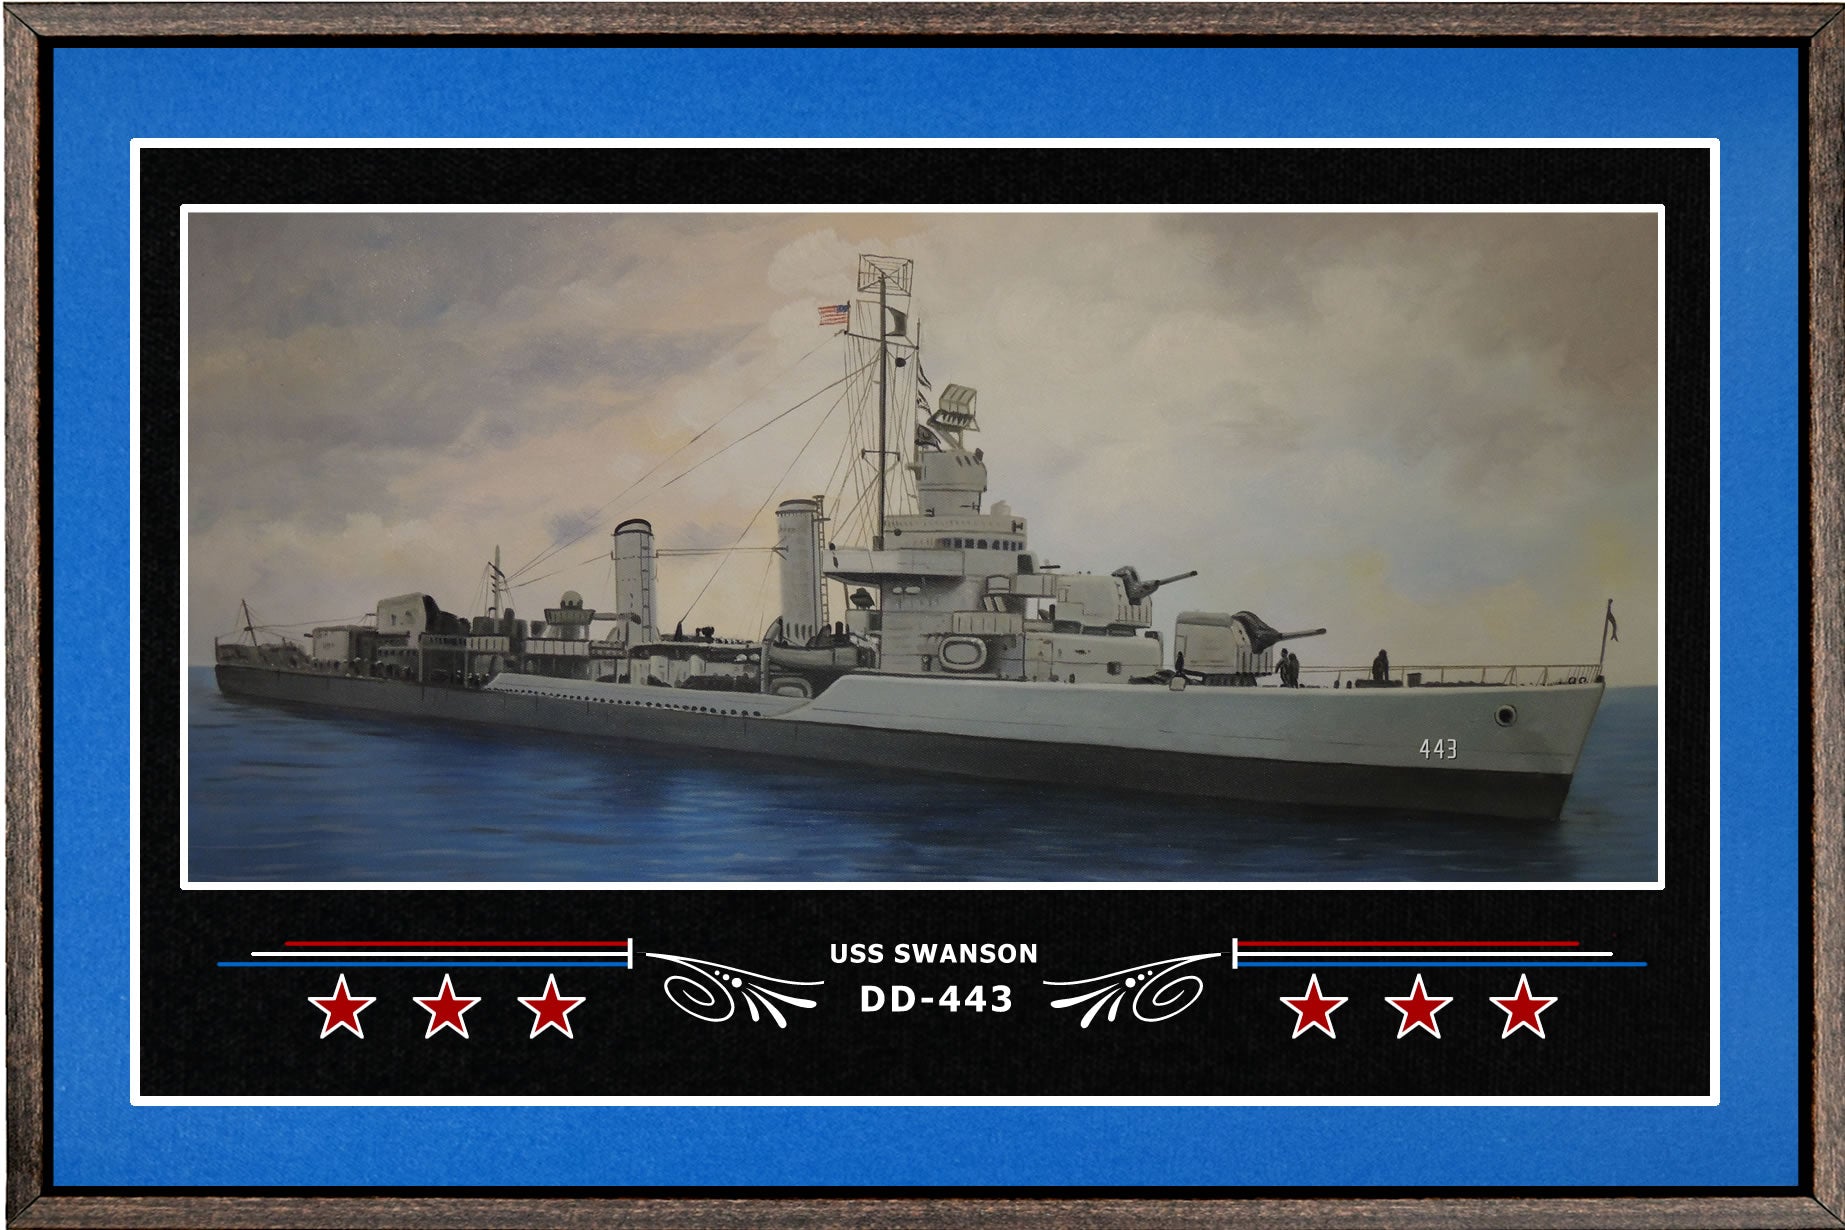 USS SWANSON DD 443 BOX FRAMED CANVAS ART BLUE